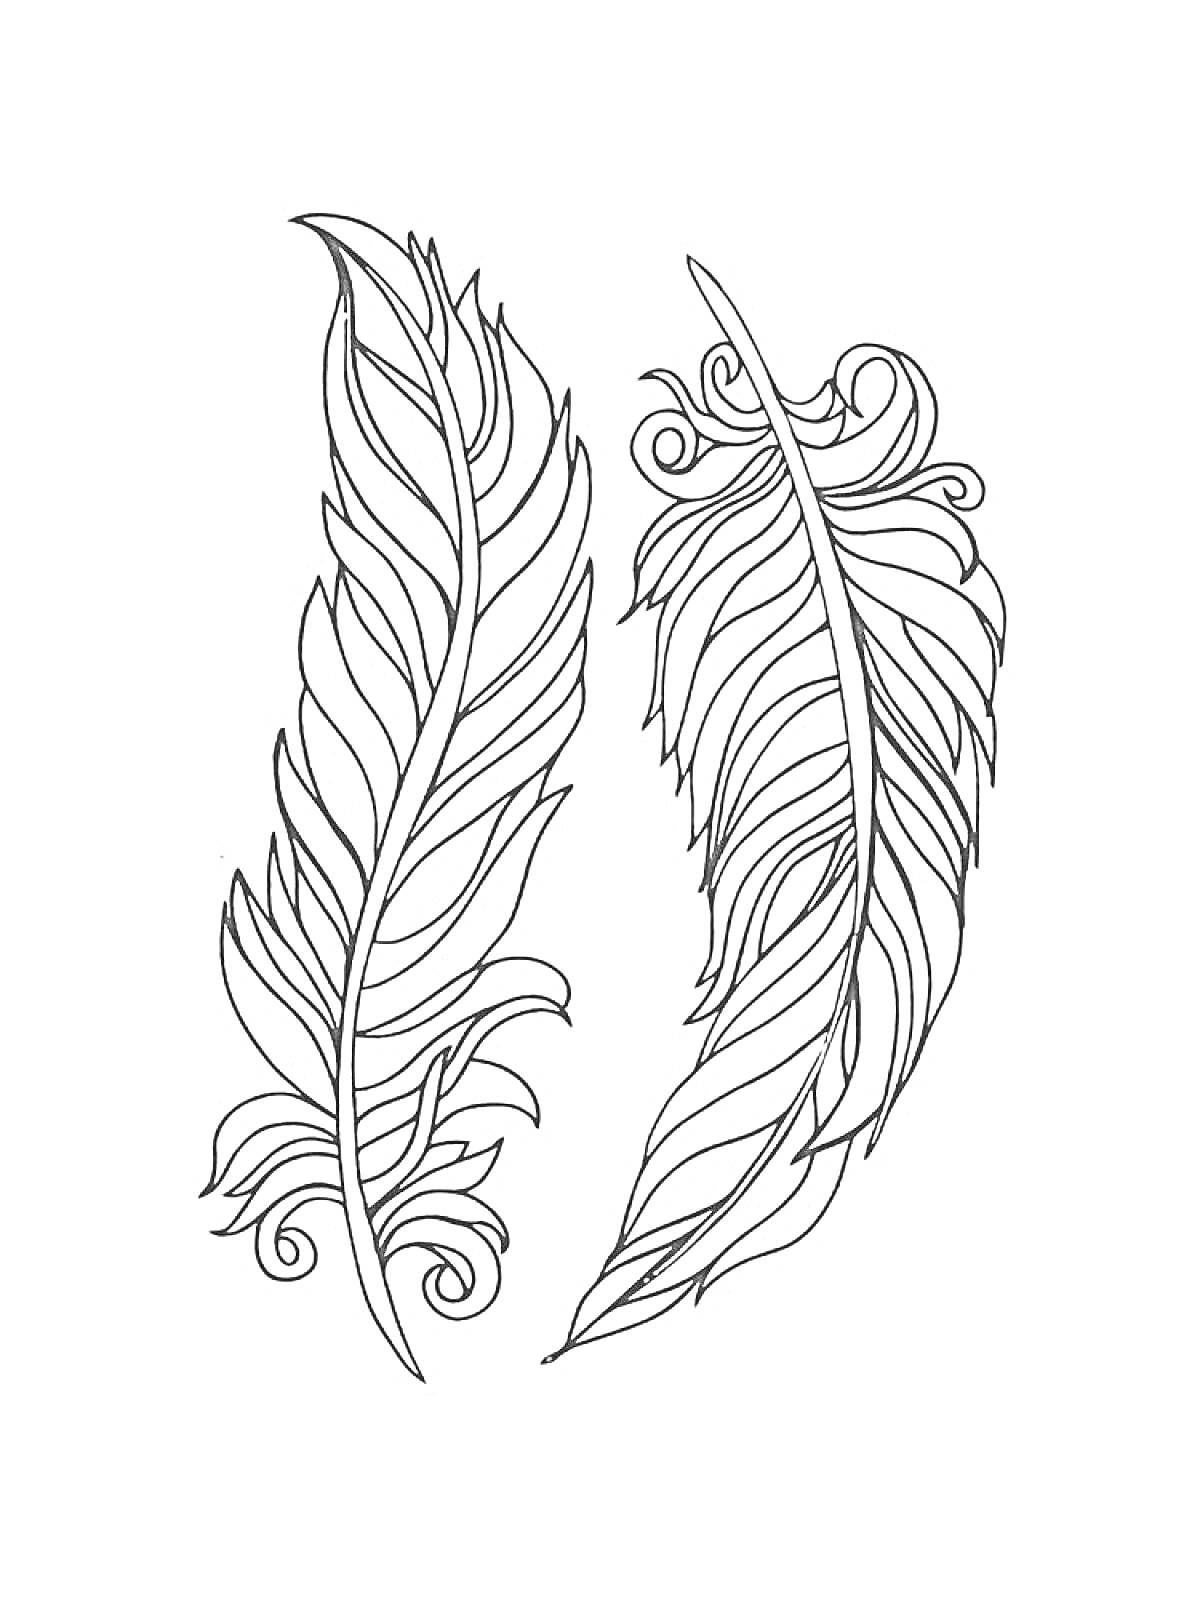 Раскраска Пара декоративных перьев в черно-белом стиле